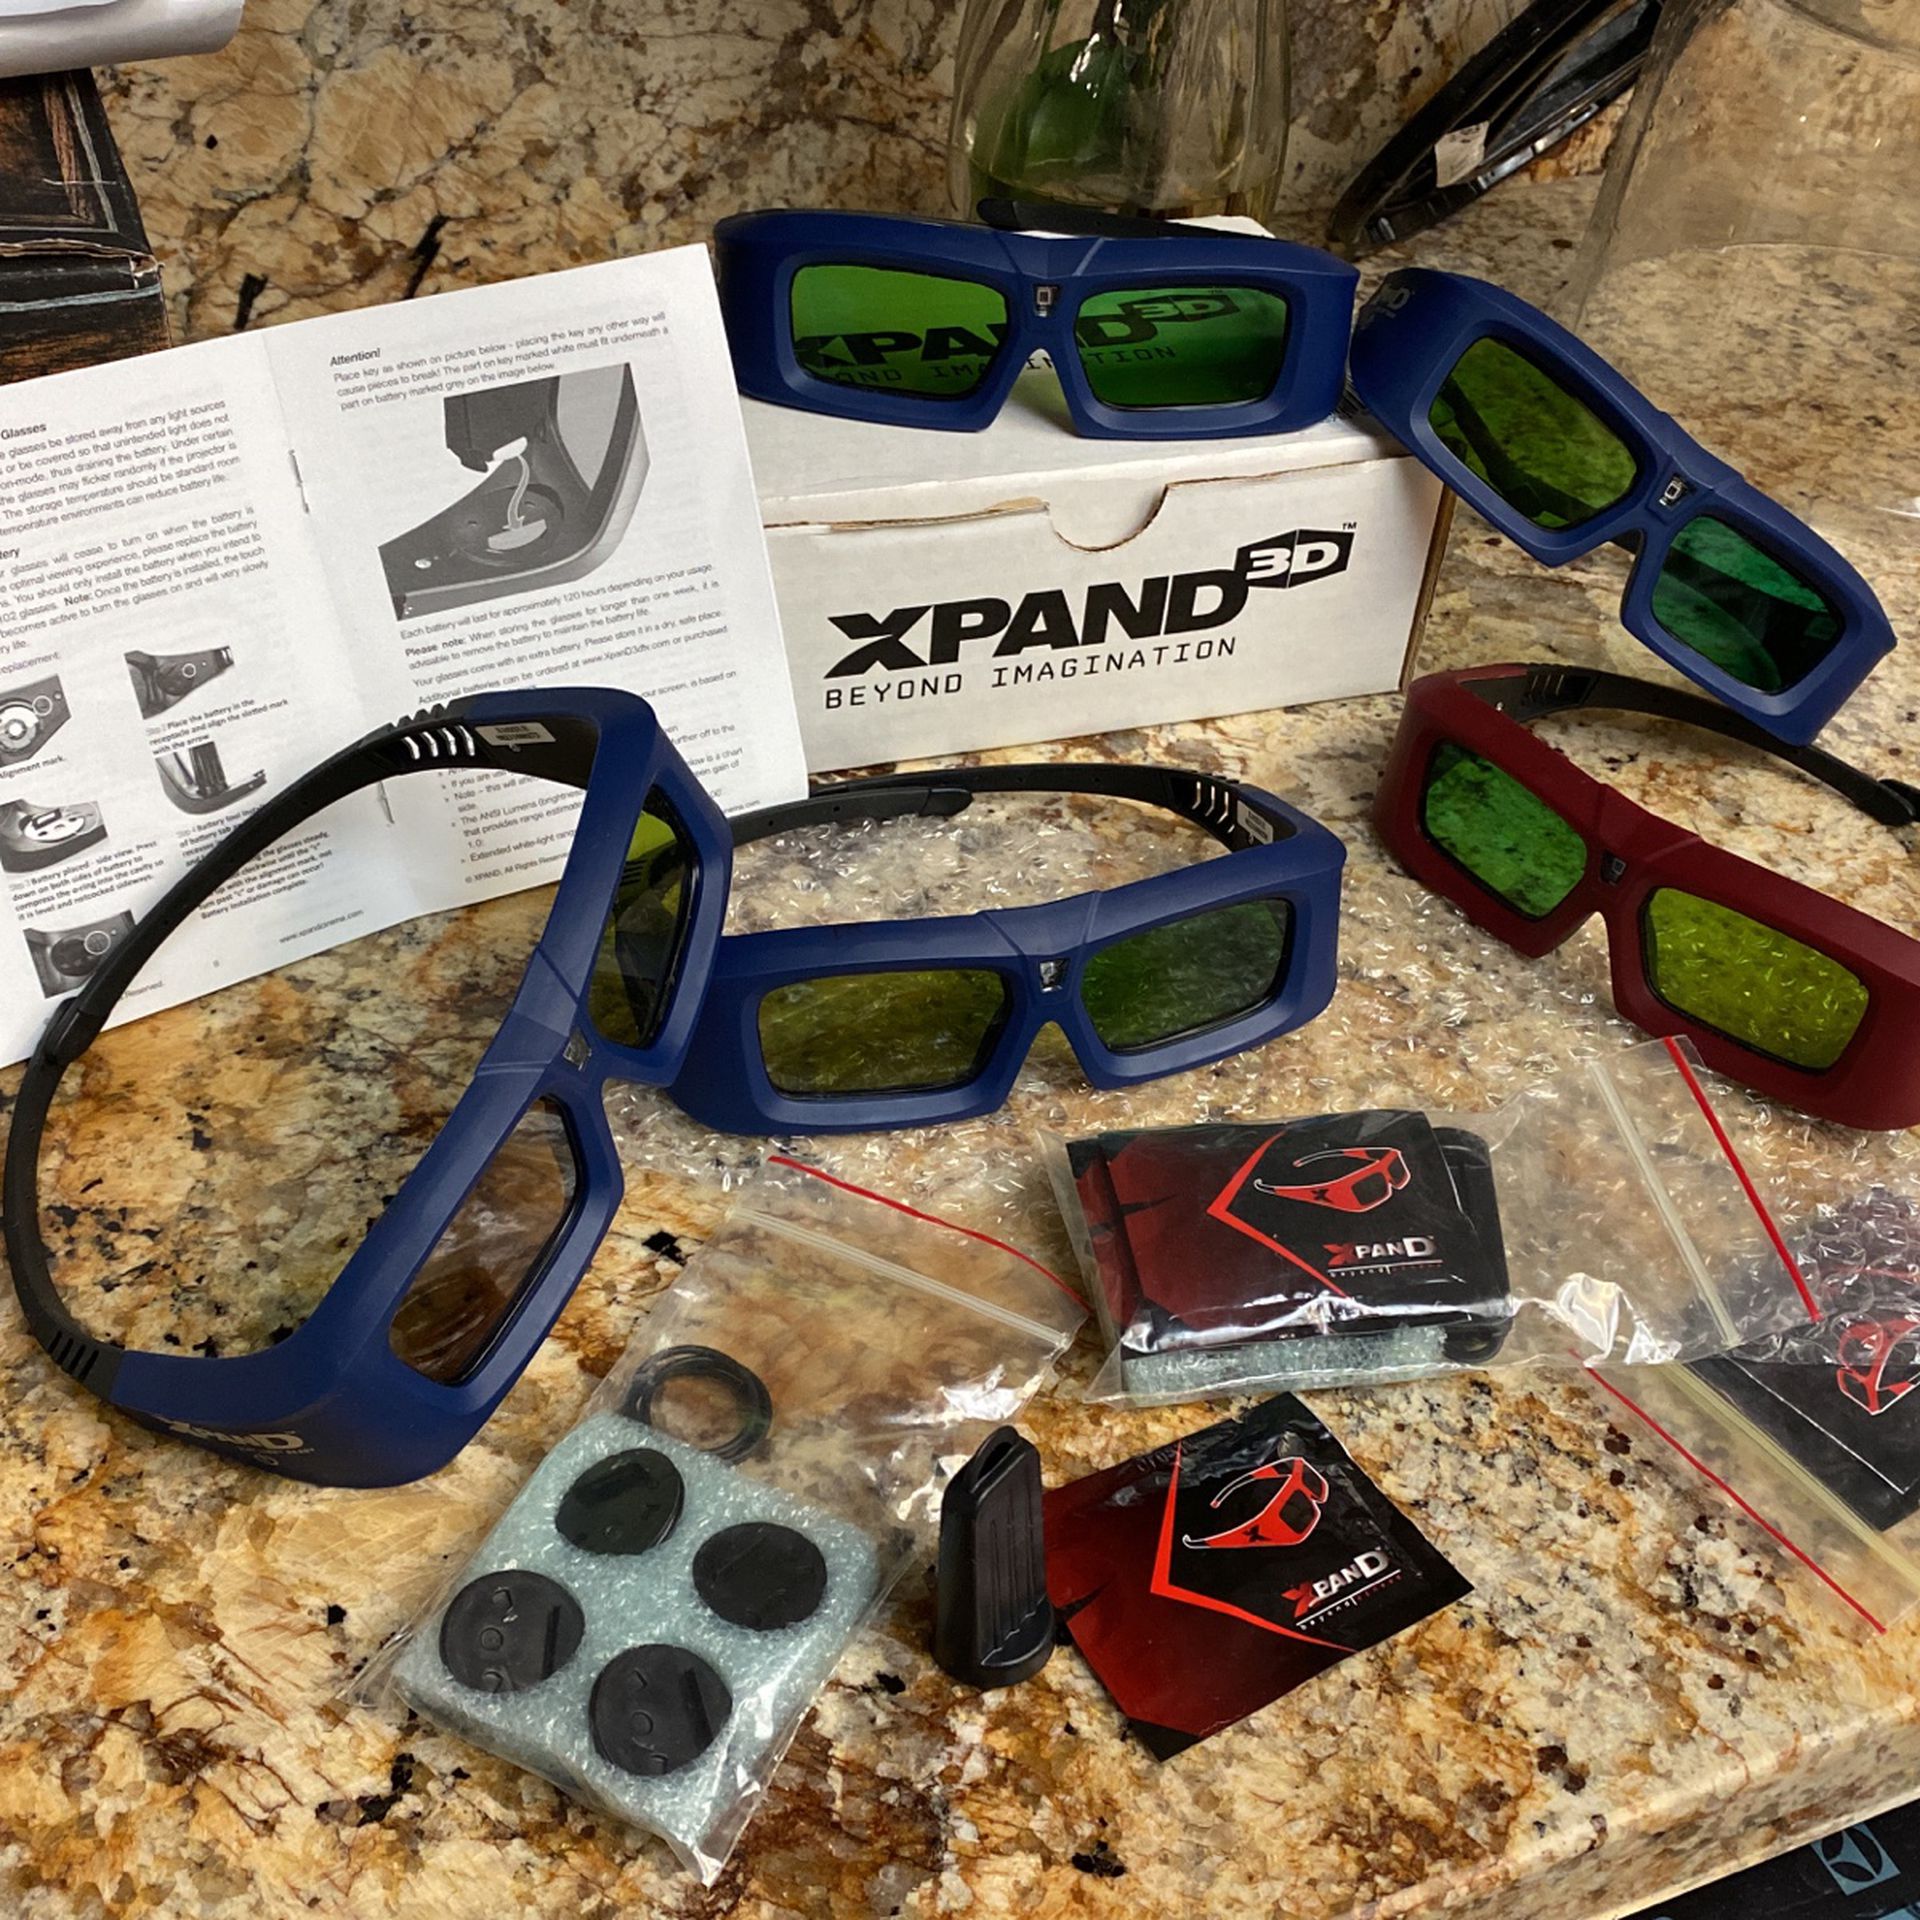 Pair XPAND DLP-Link Beyond Imagination 3D Glasses X102-R2 Batteries Included